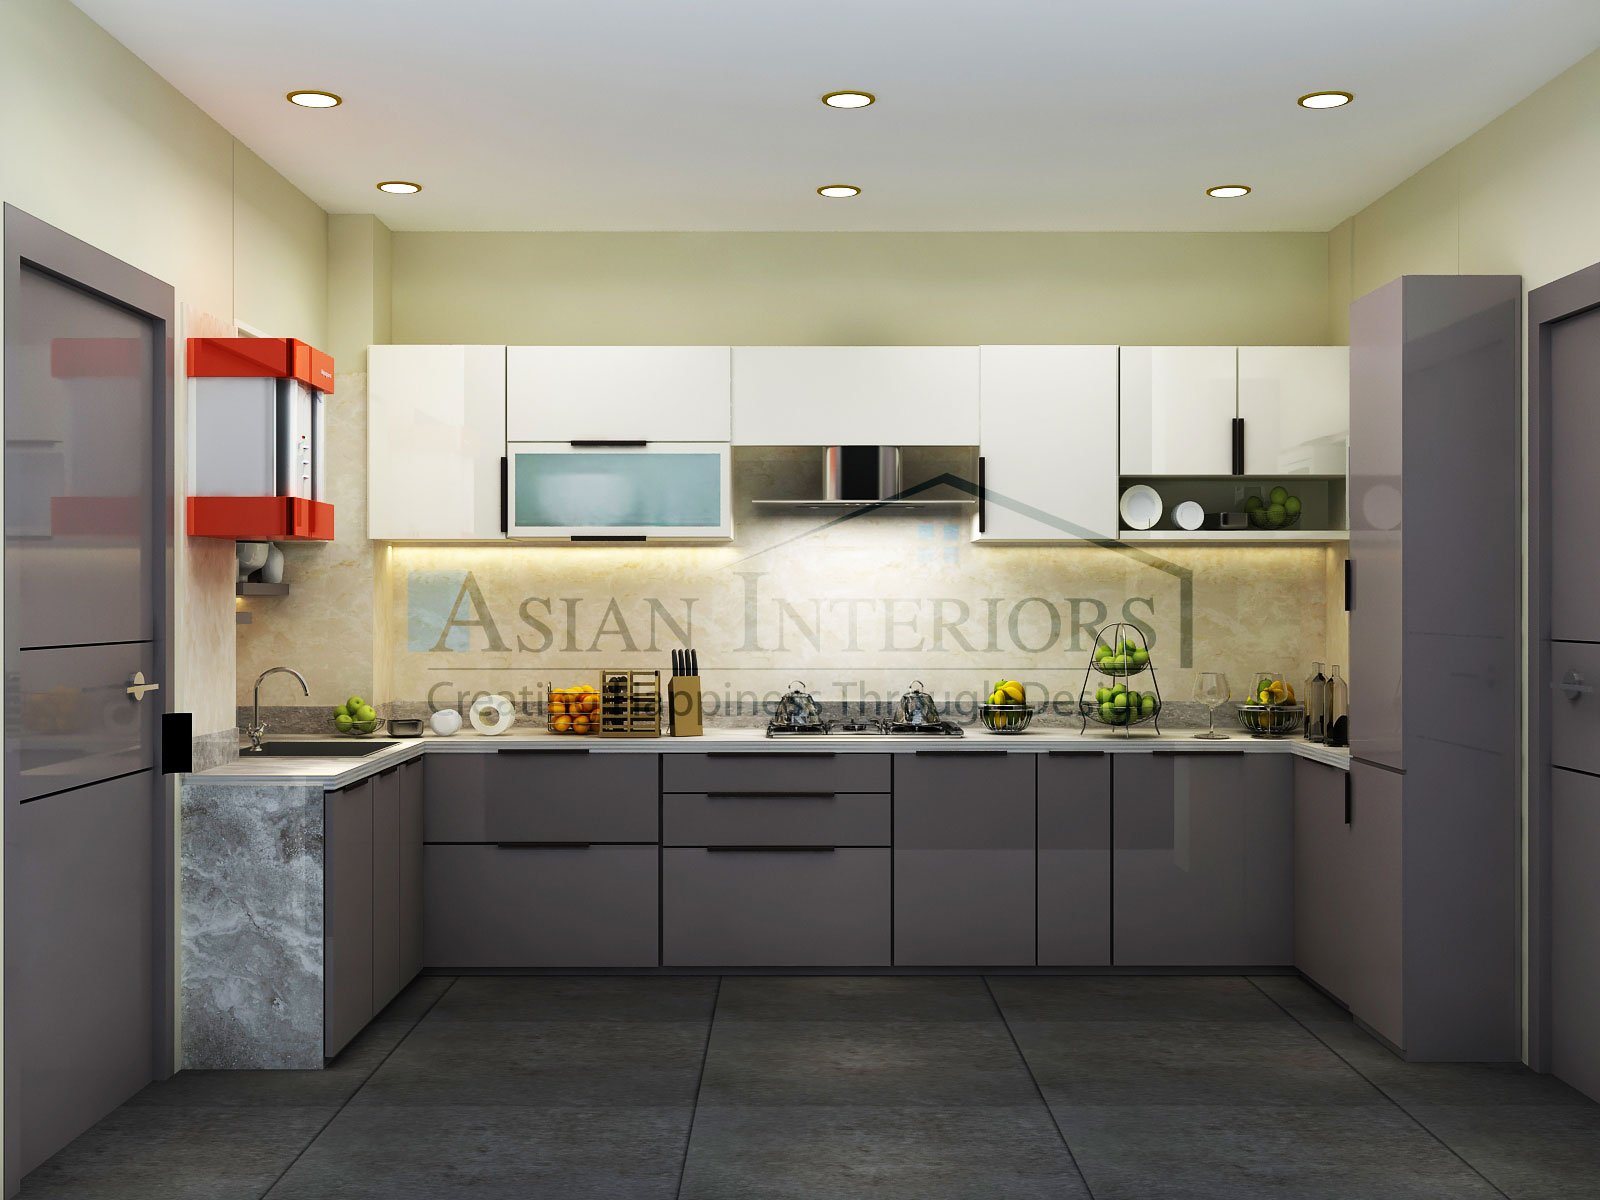 Asian-Interiors-Kitchen28